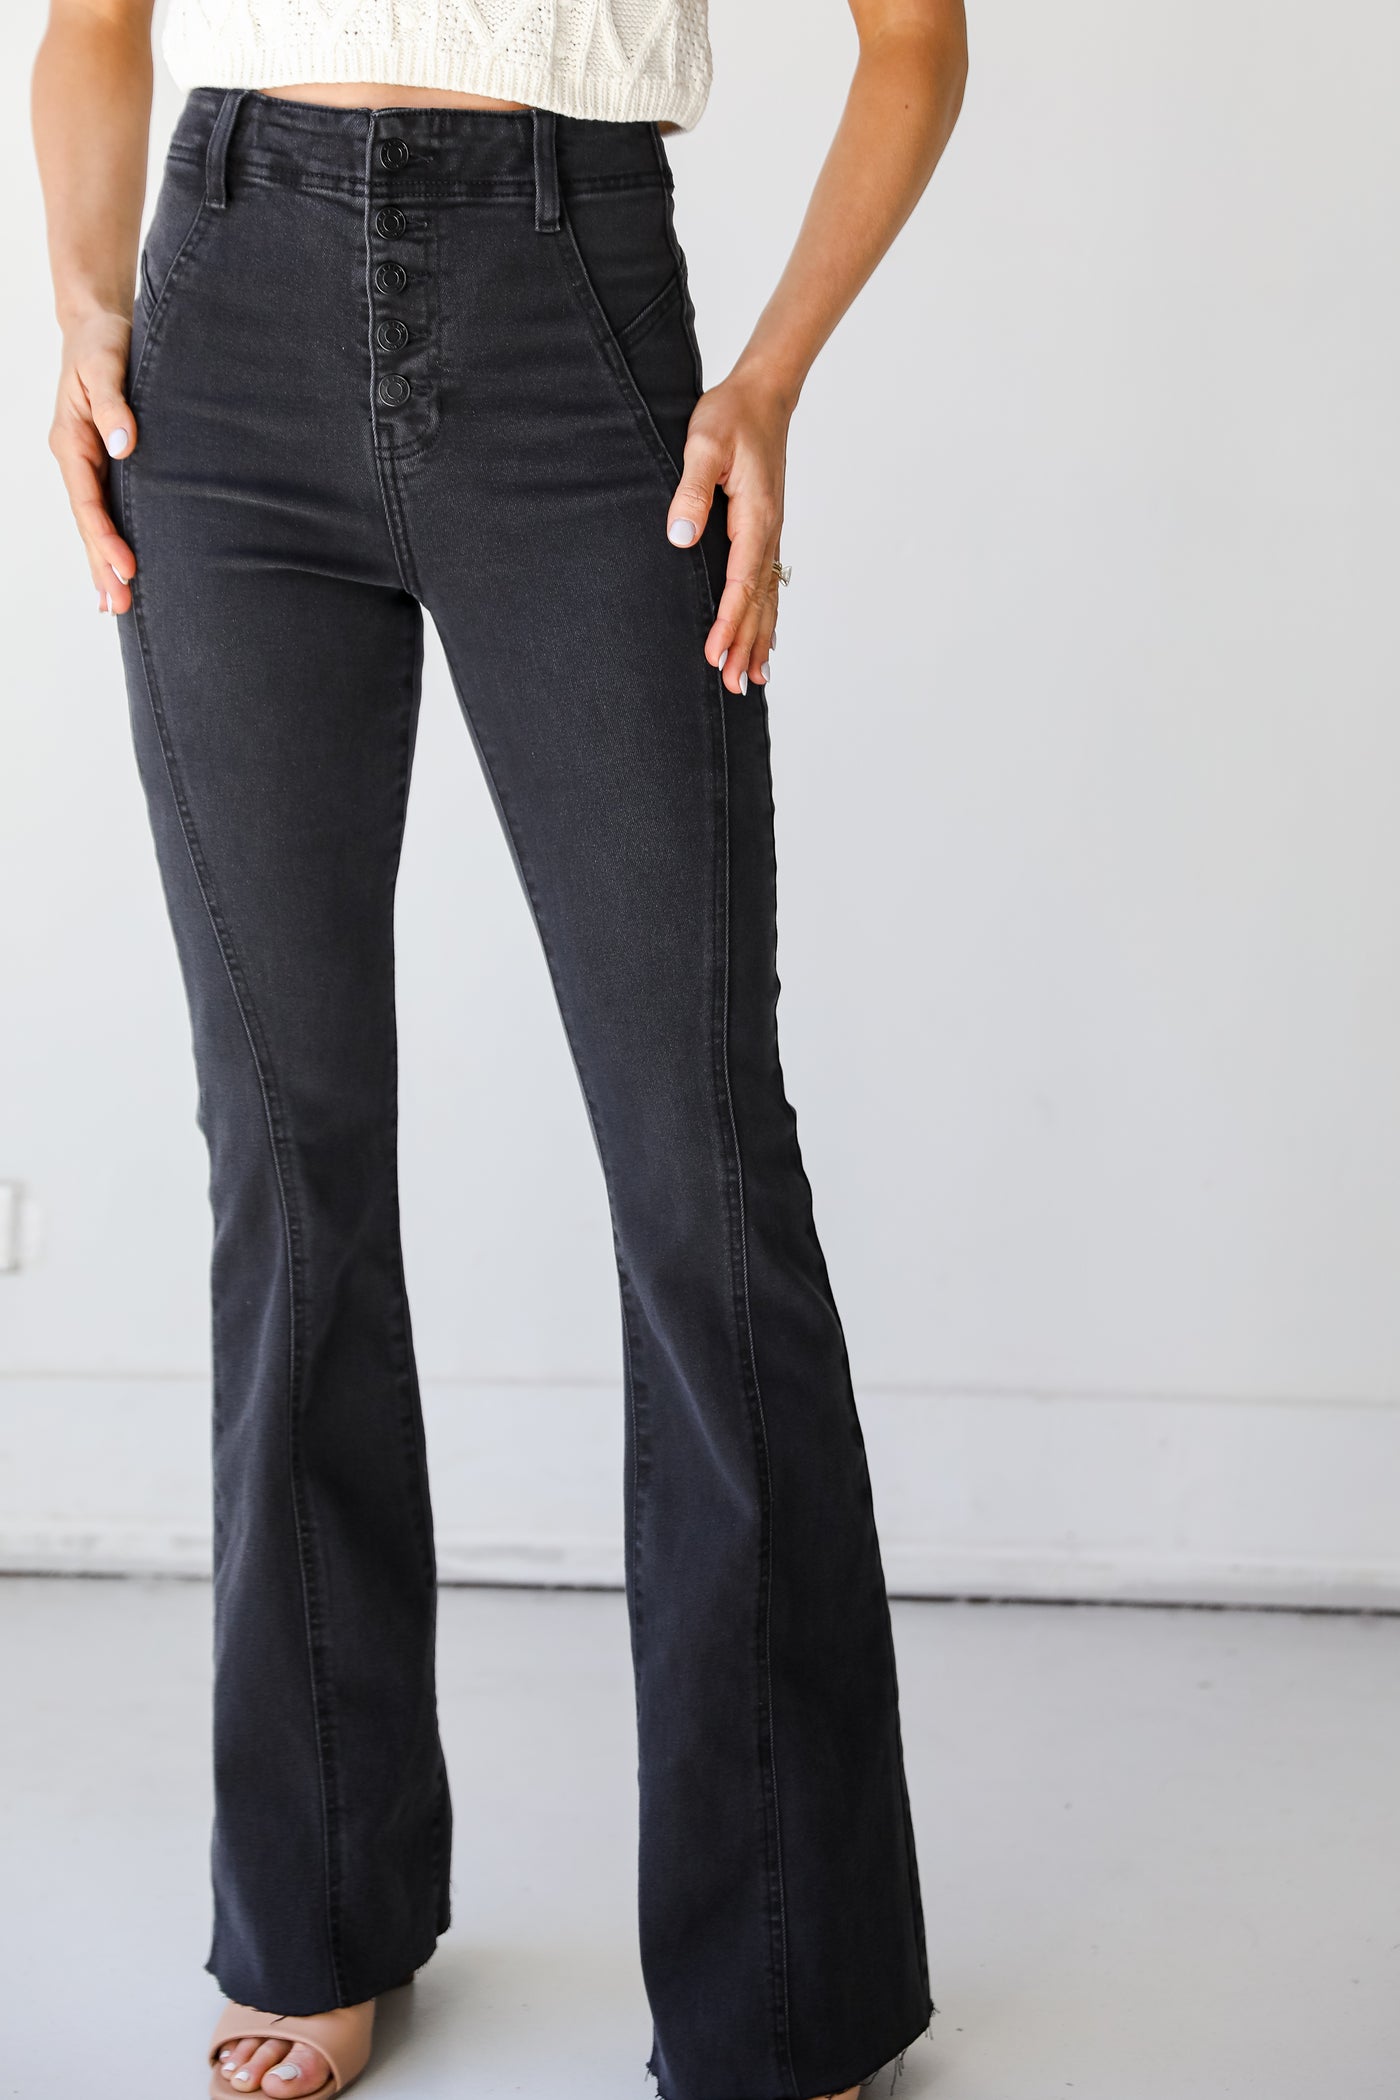 Black Flare Jeans on model